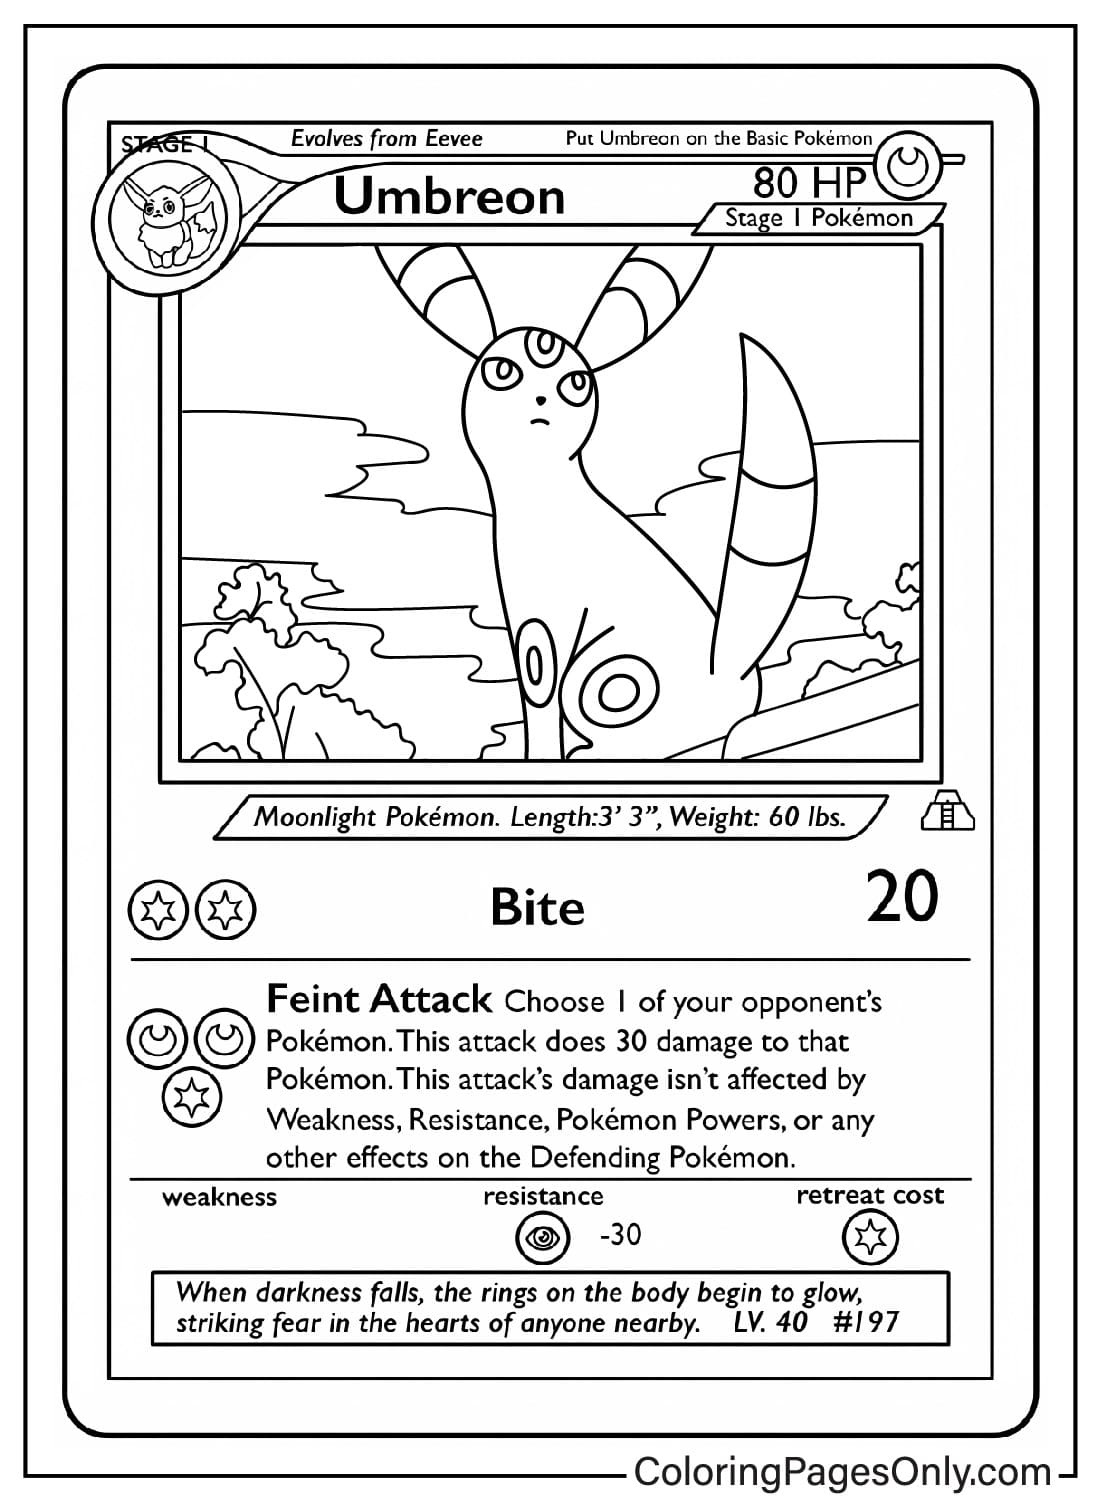 Pokemon-Karten-Malbogen Umbreon von Pokemon Card